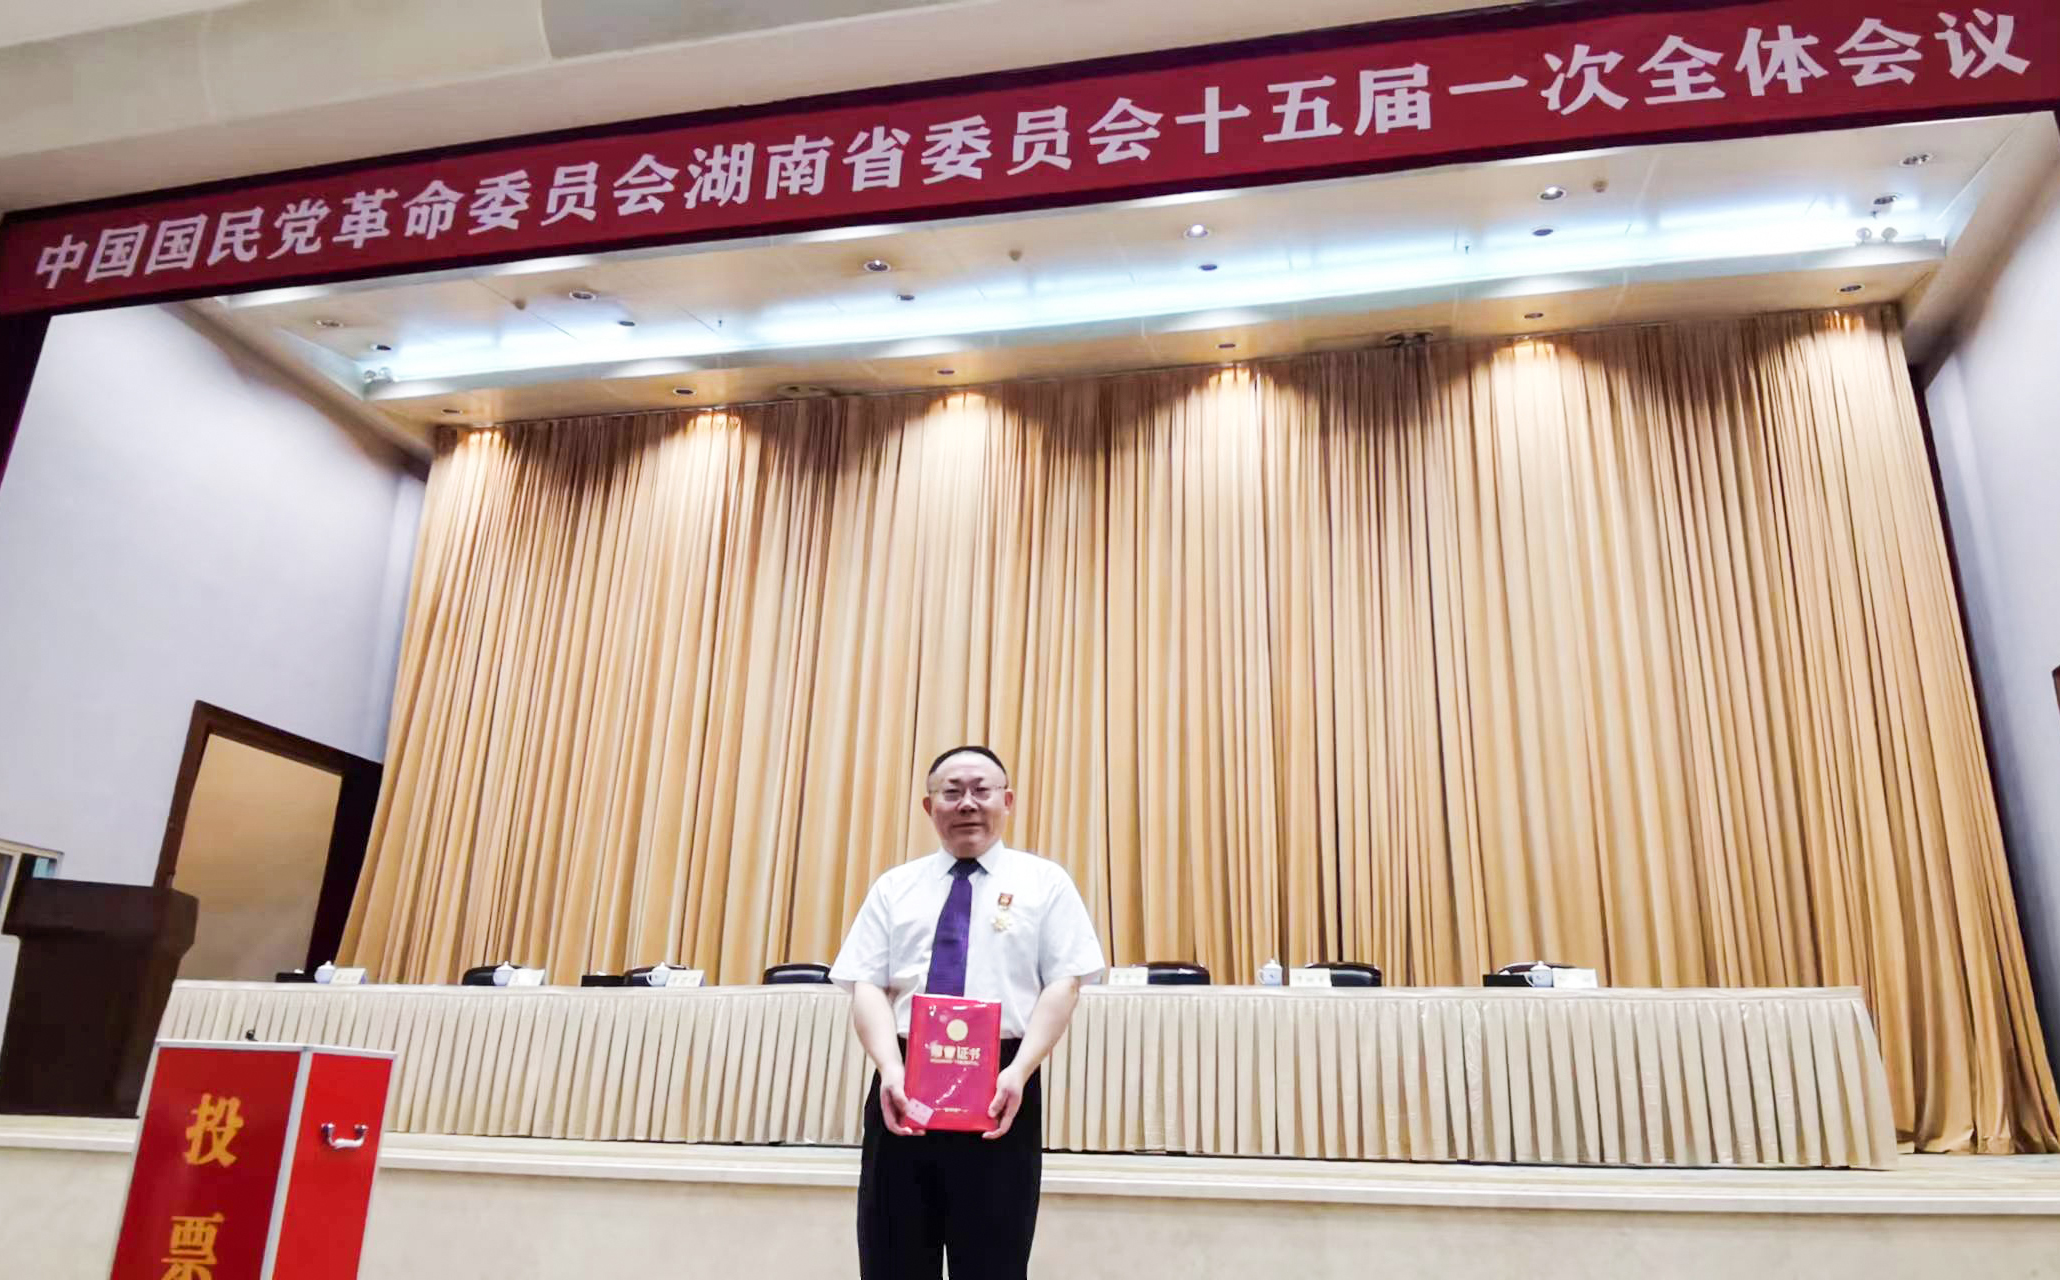 戴煜董事长参加民革省委第十六次代表大会 获“优秀党员”称号